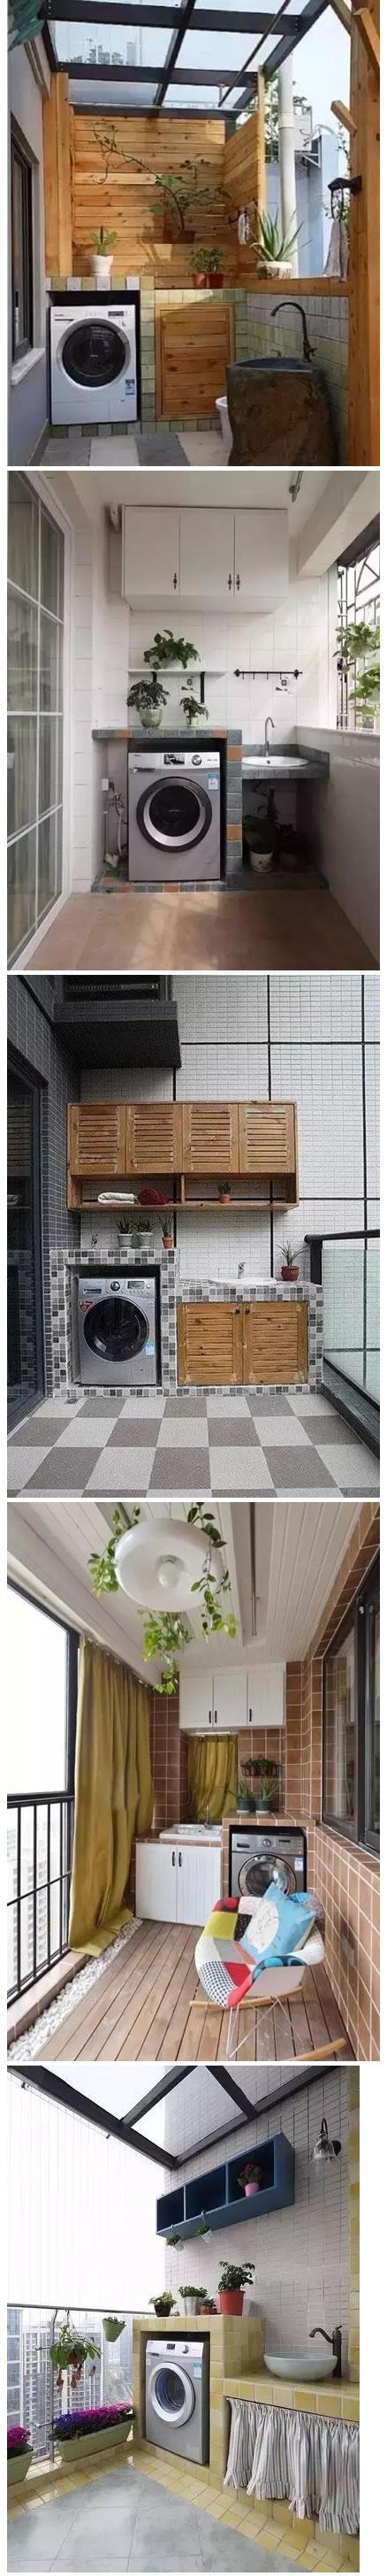 砖砌洗衣槽图片图片